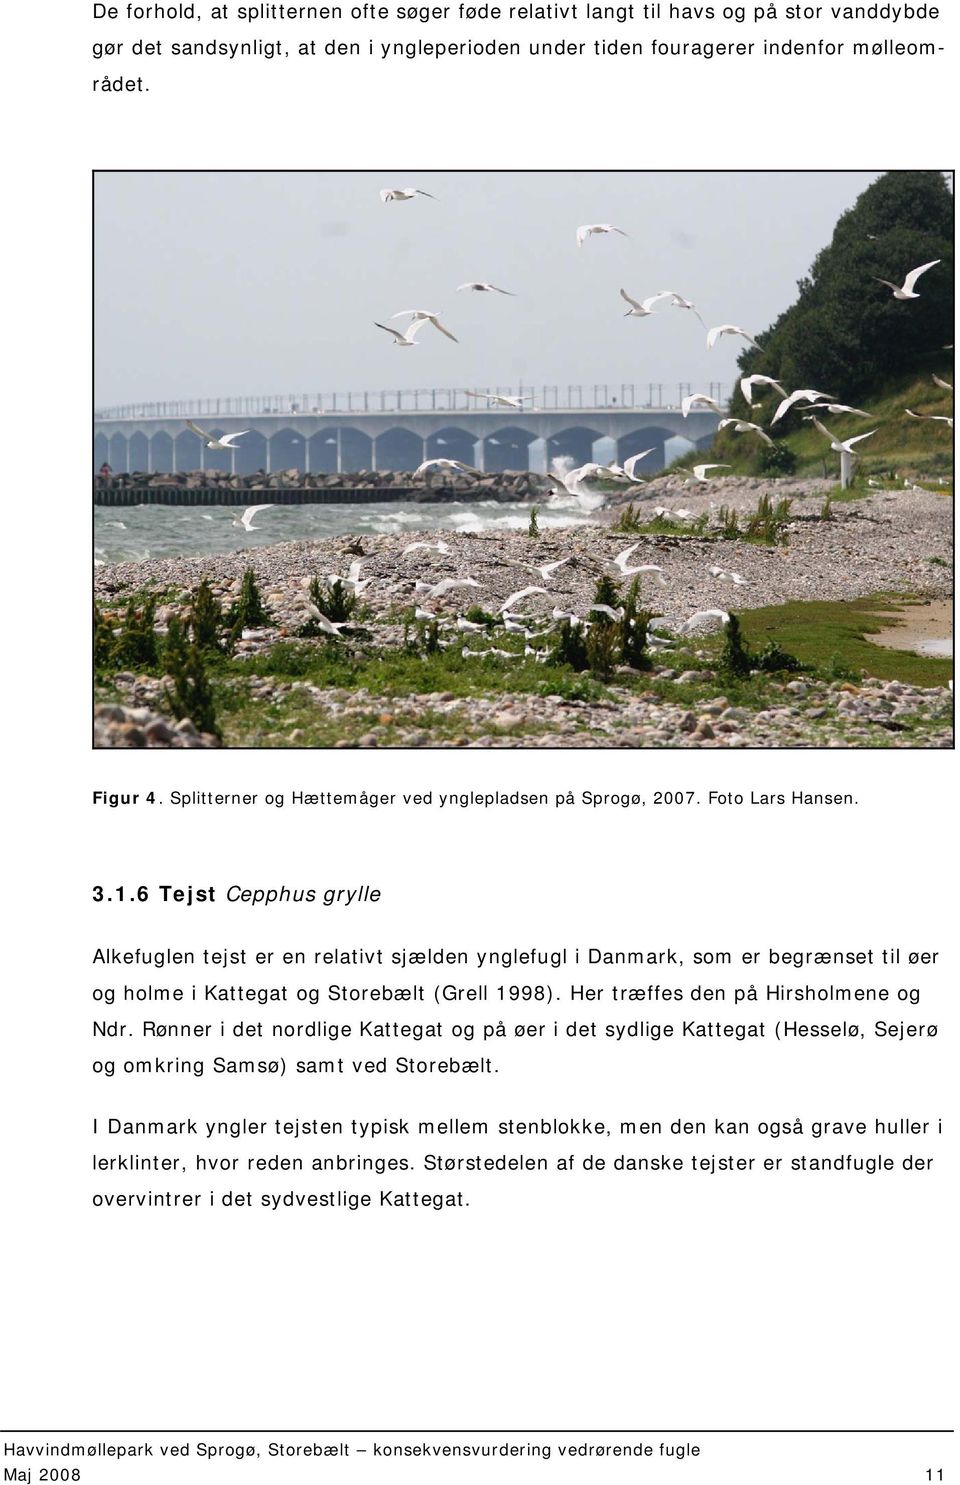 6 Tejst Cepphus grylle Alkefuglen tejst er en relativt sjælden ynglefugl i Danmark, som er begrænset til øer og holme i Kattegat og Storebælt (Grell 1998). Her træffes den på Hirsholmene og Ndr.